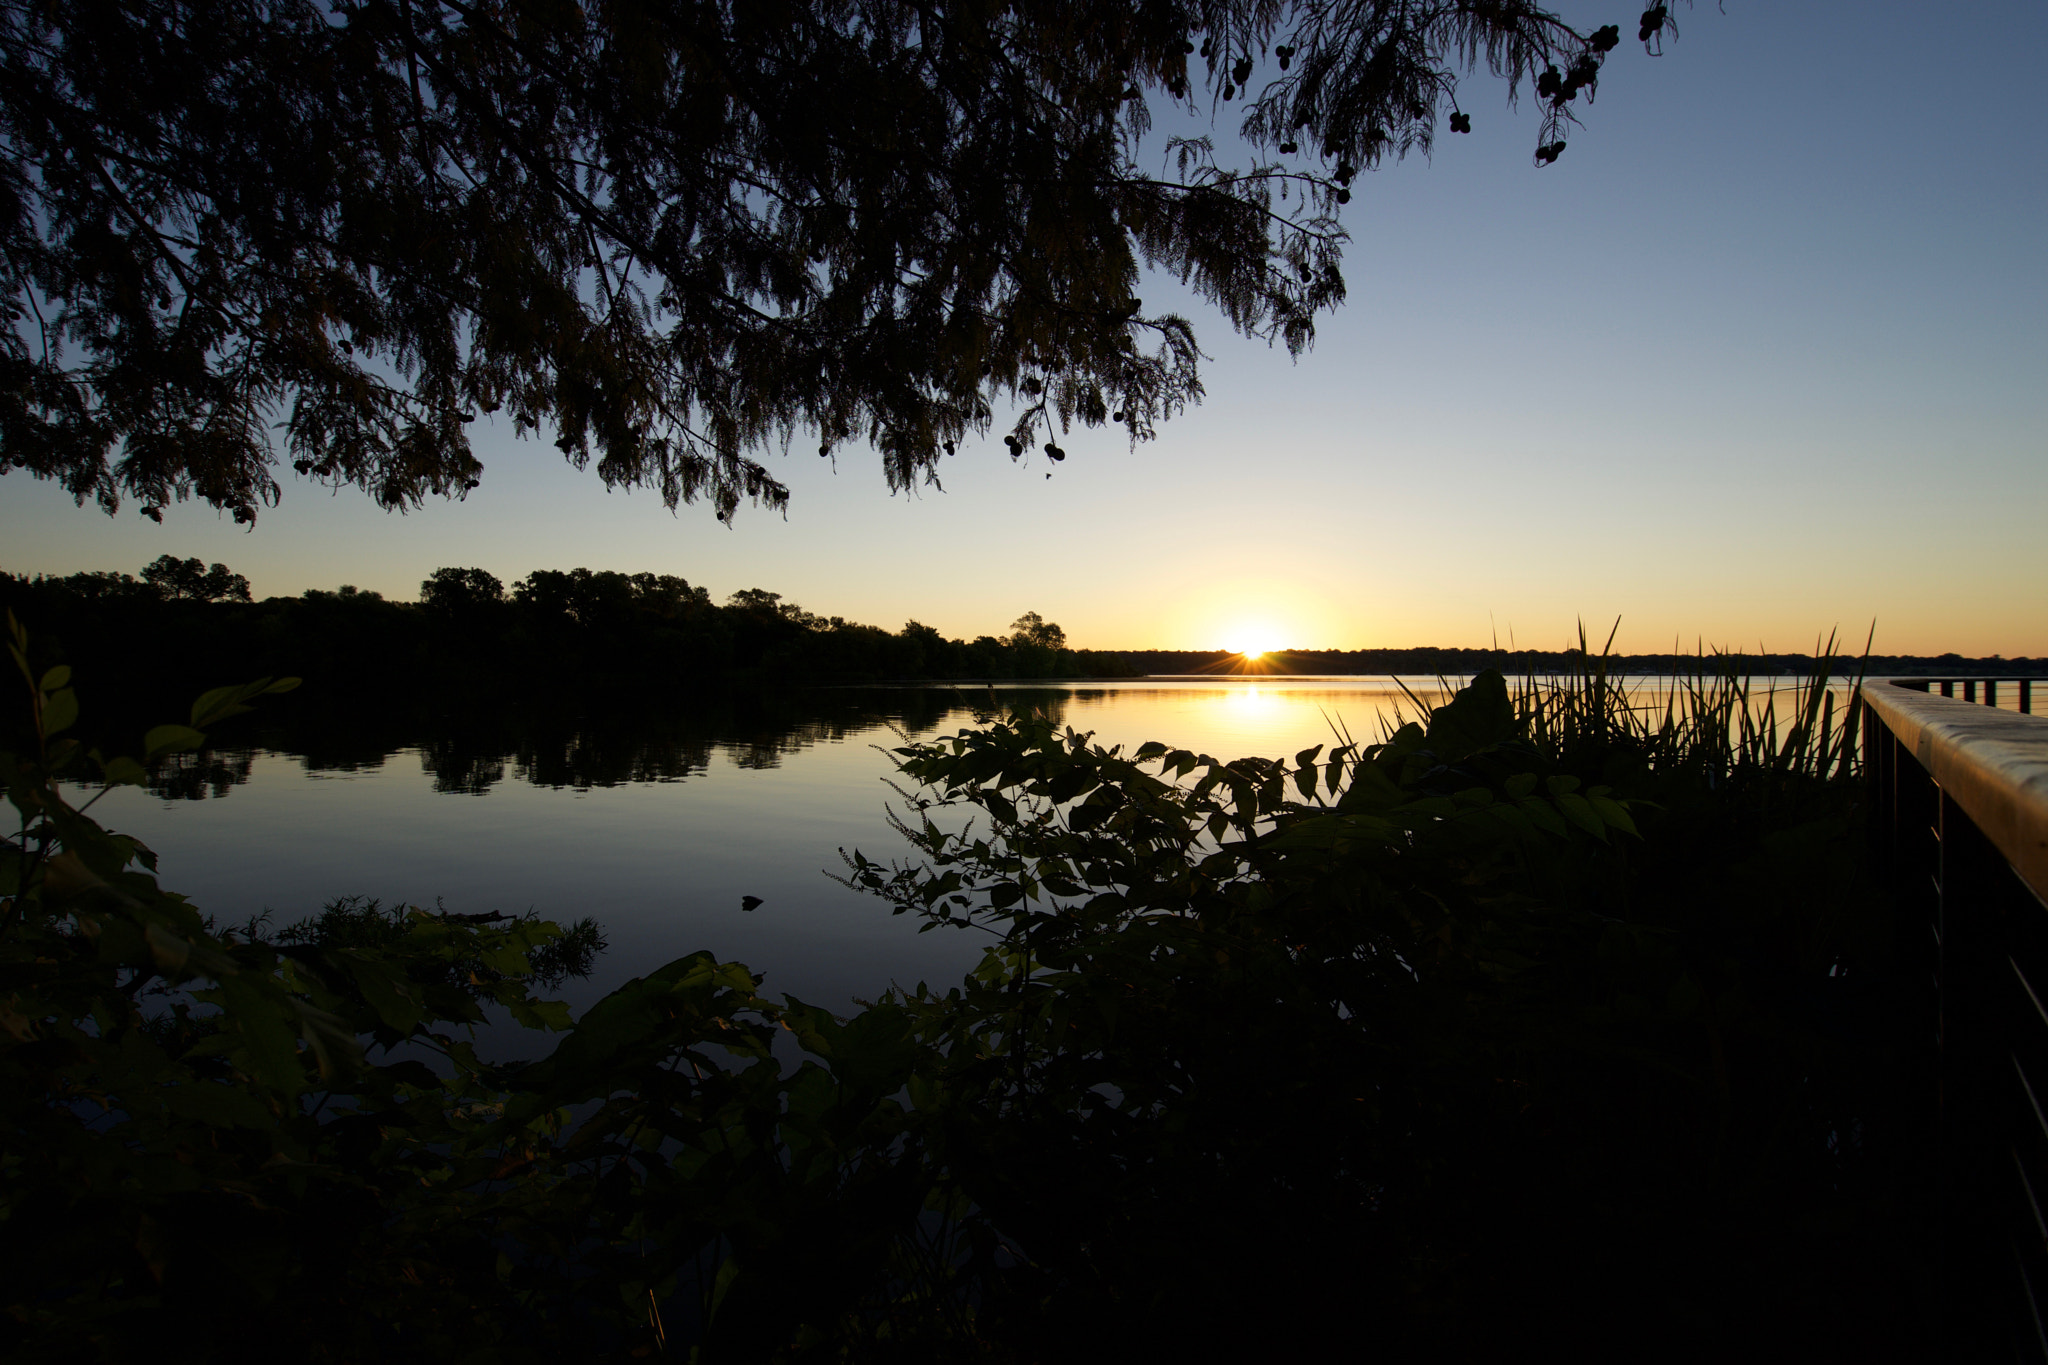 Sony a7 + Sony Vario-Tessar T* FE 16-35mm F4 ZA OSS sample photo. Sunrise at white rock lake photography